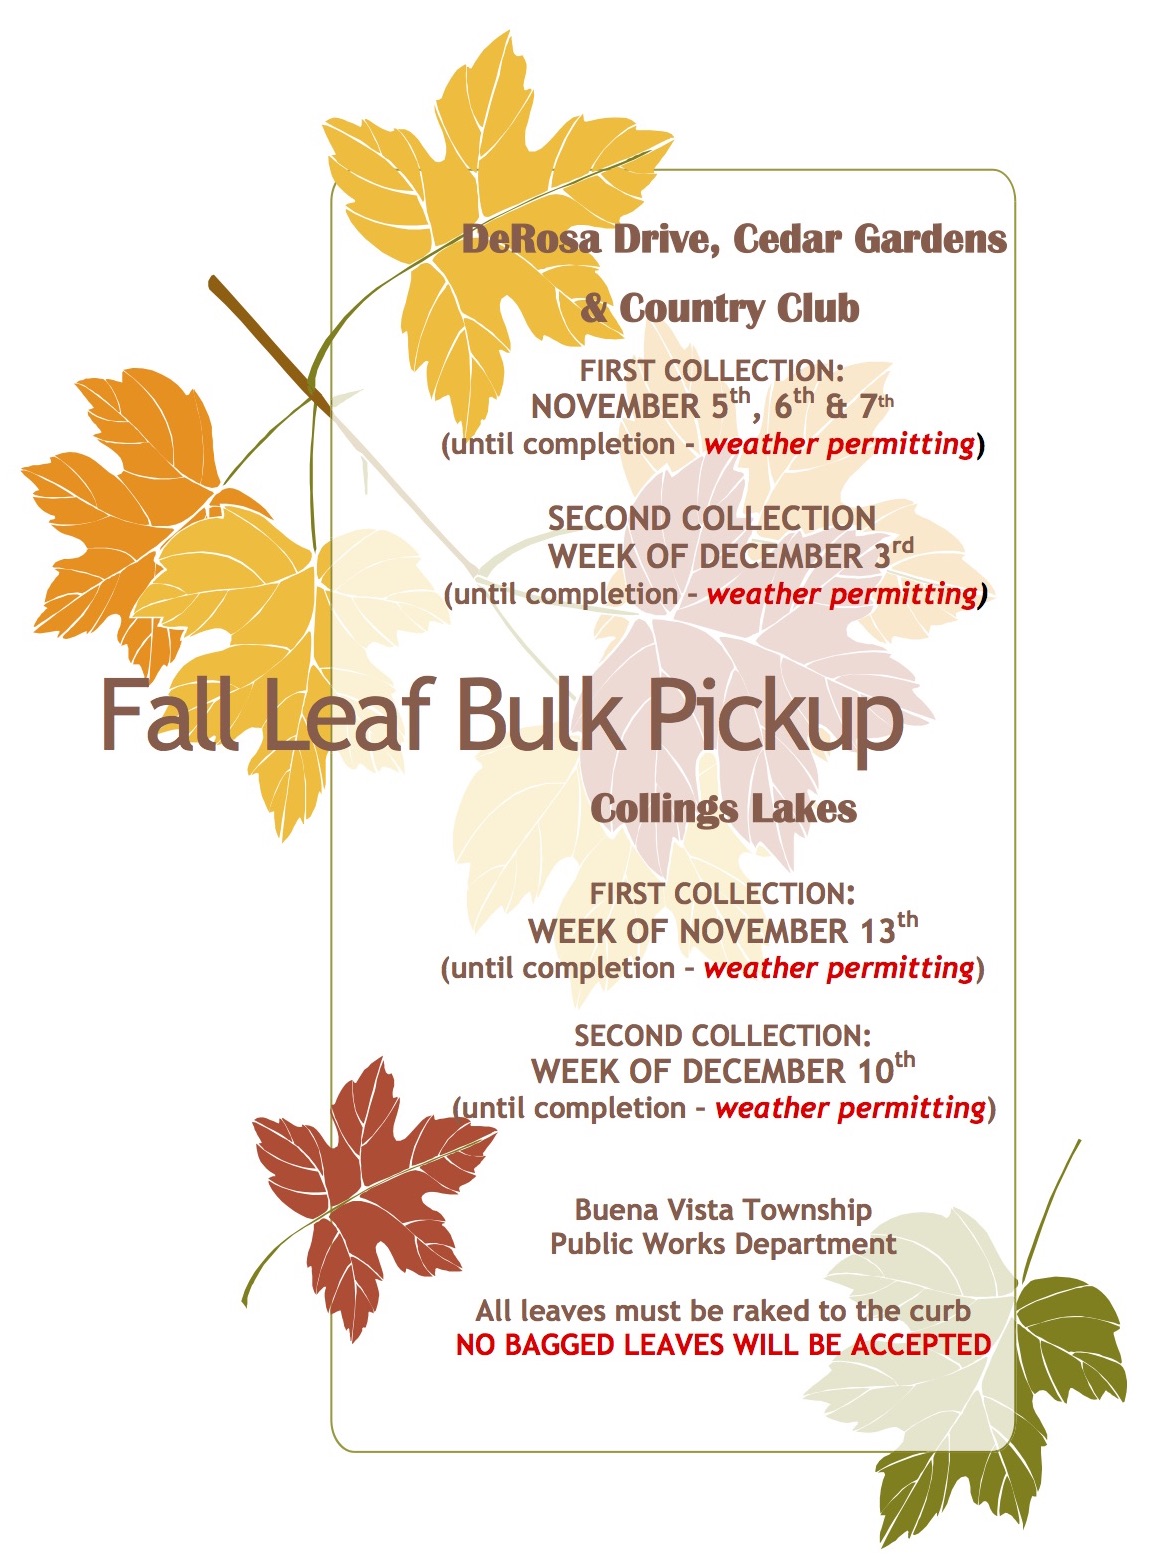 Fall Leaf Bulk Pickup Schedule Released – Buena Vista Township